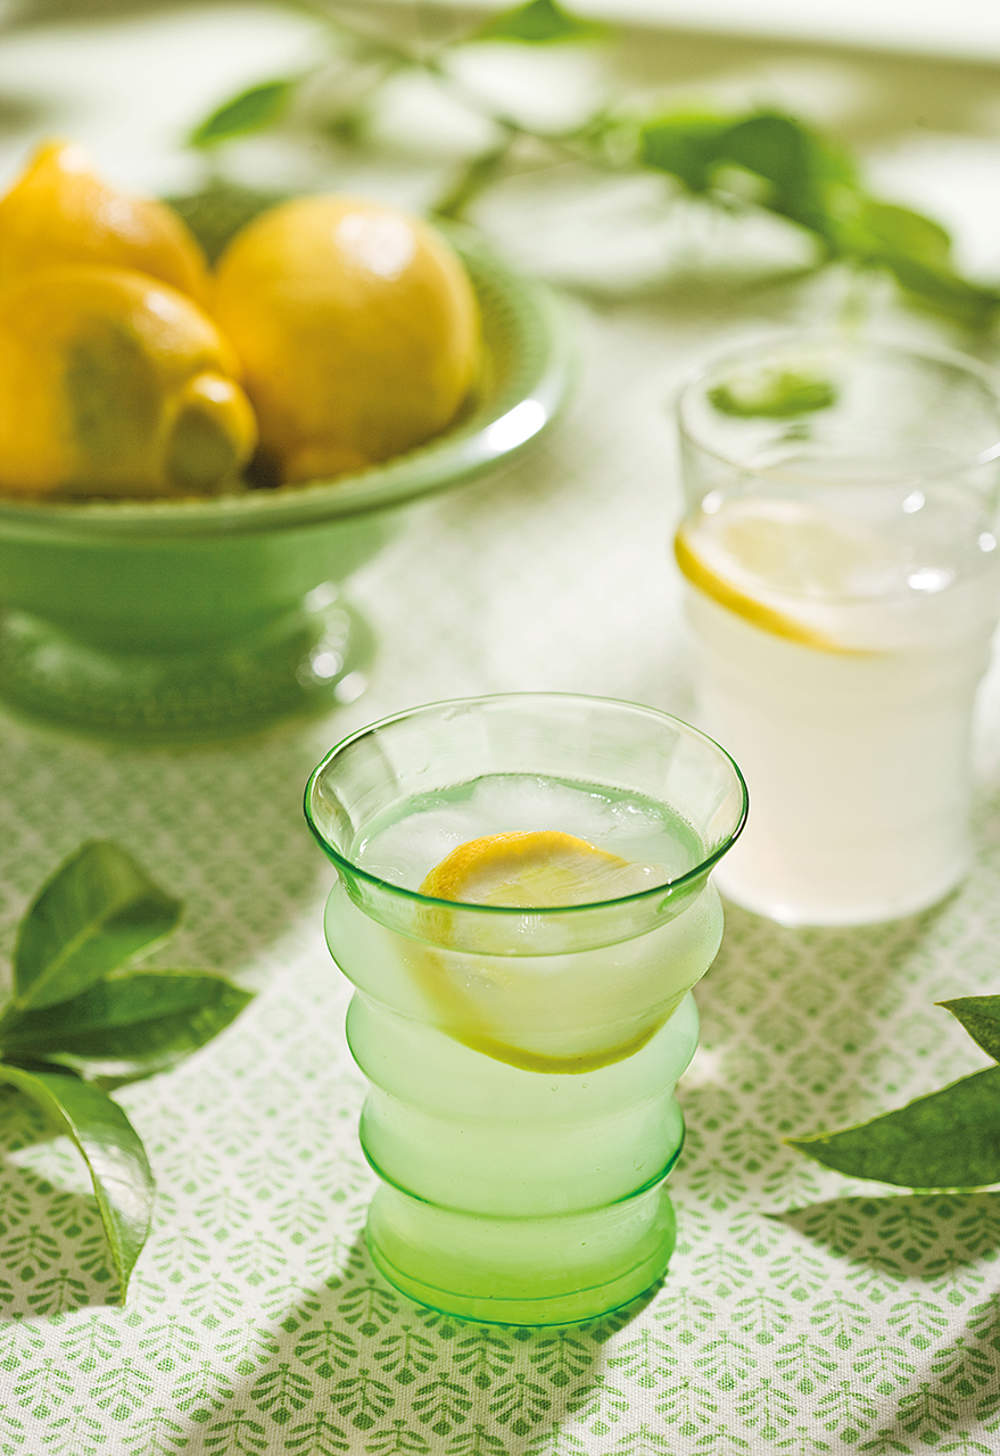 Detalle de vaso con zumo de limón